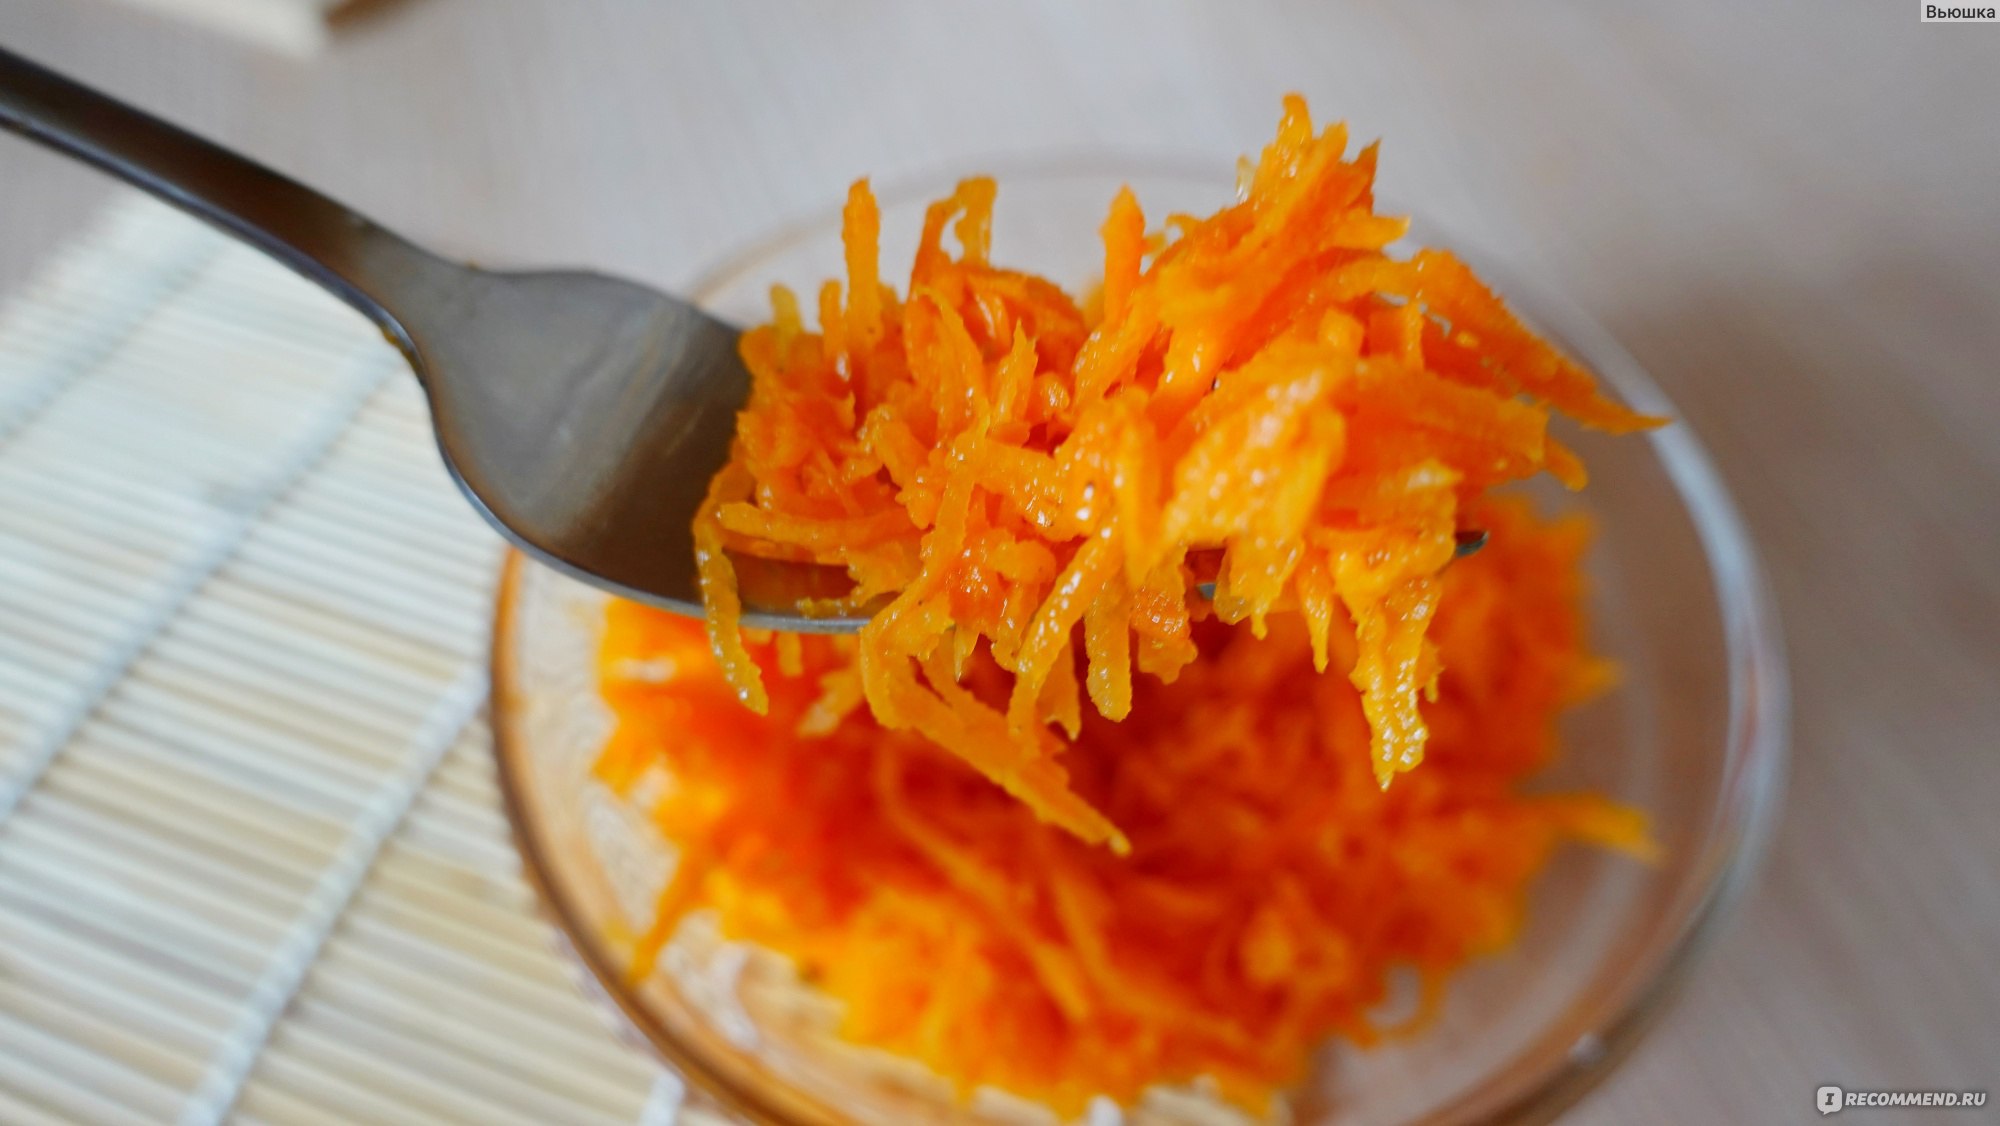 Корейская заправка ЧИМ-ЧИМ (Virtex Food) для моркови